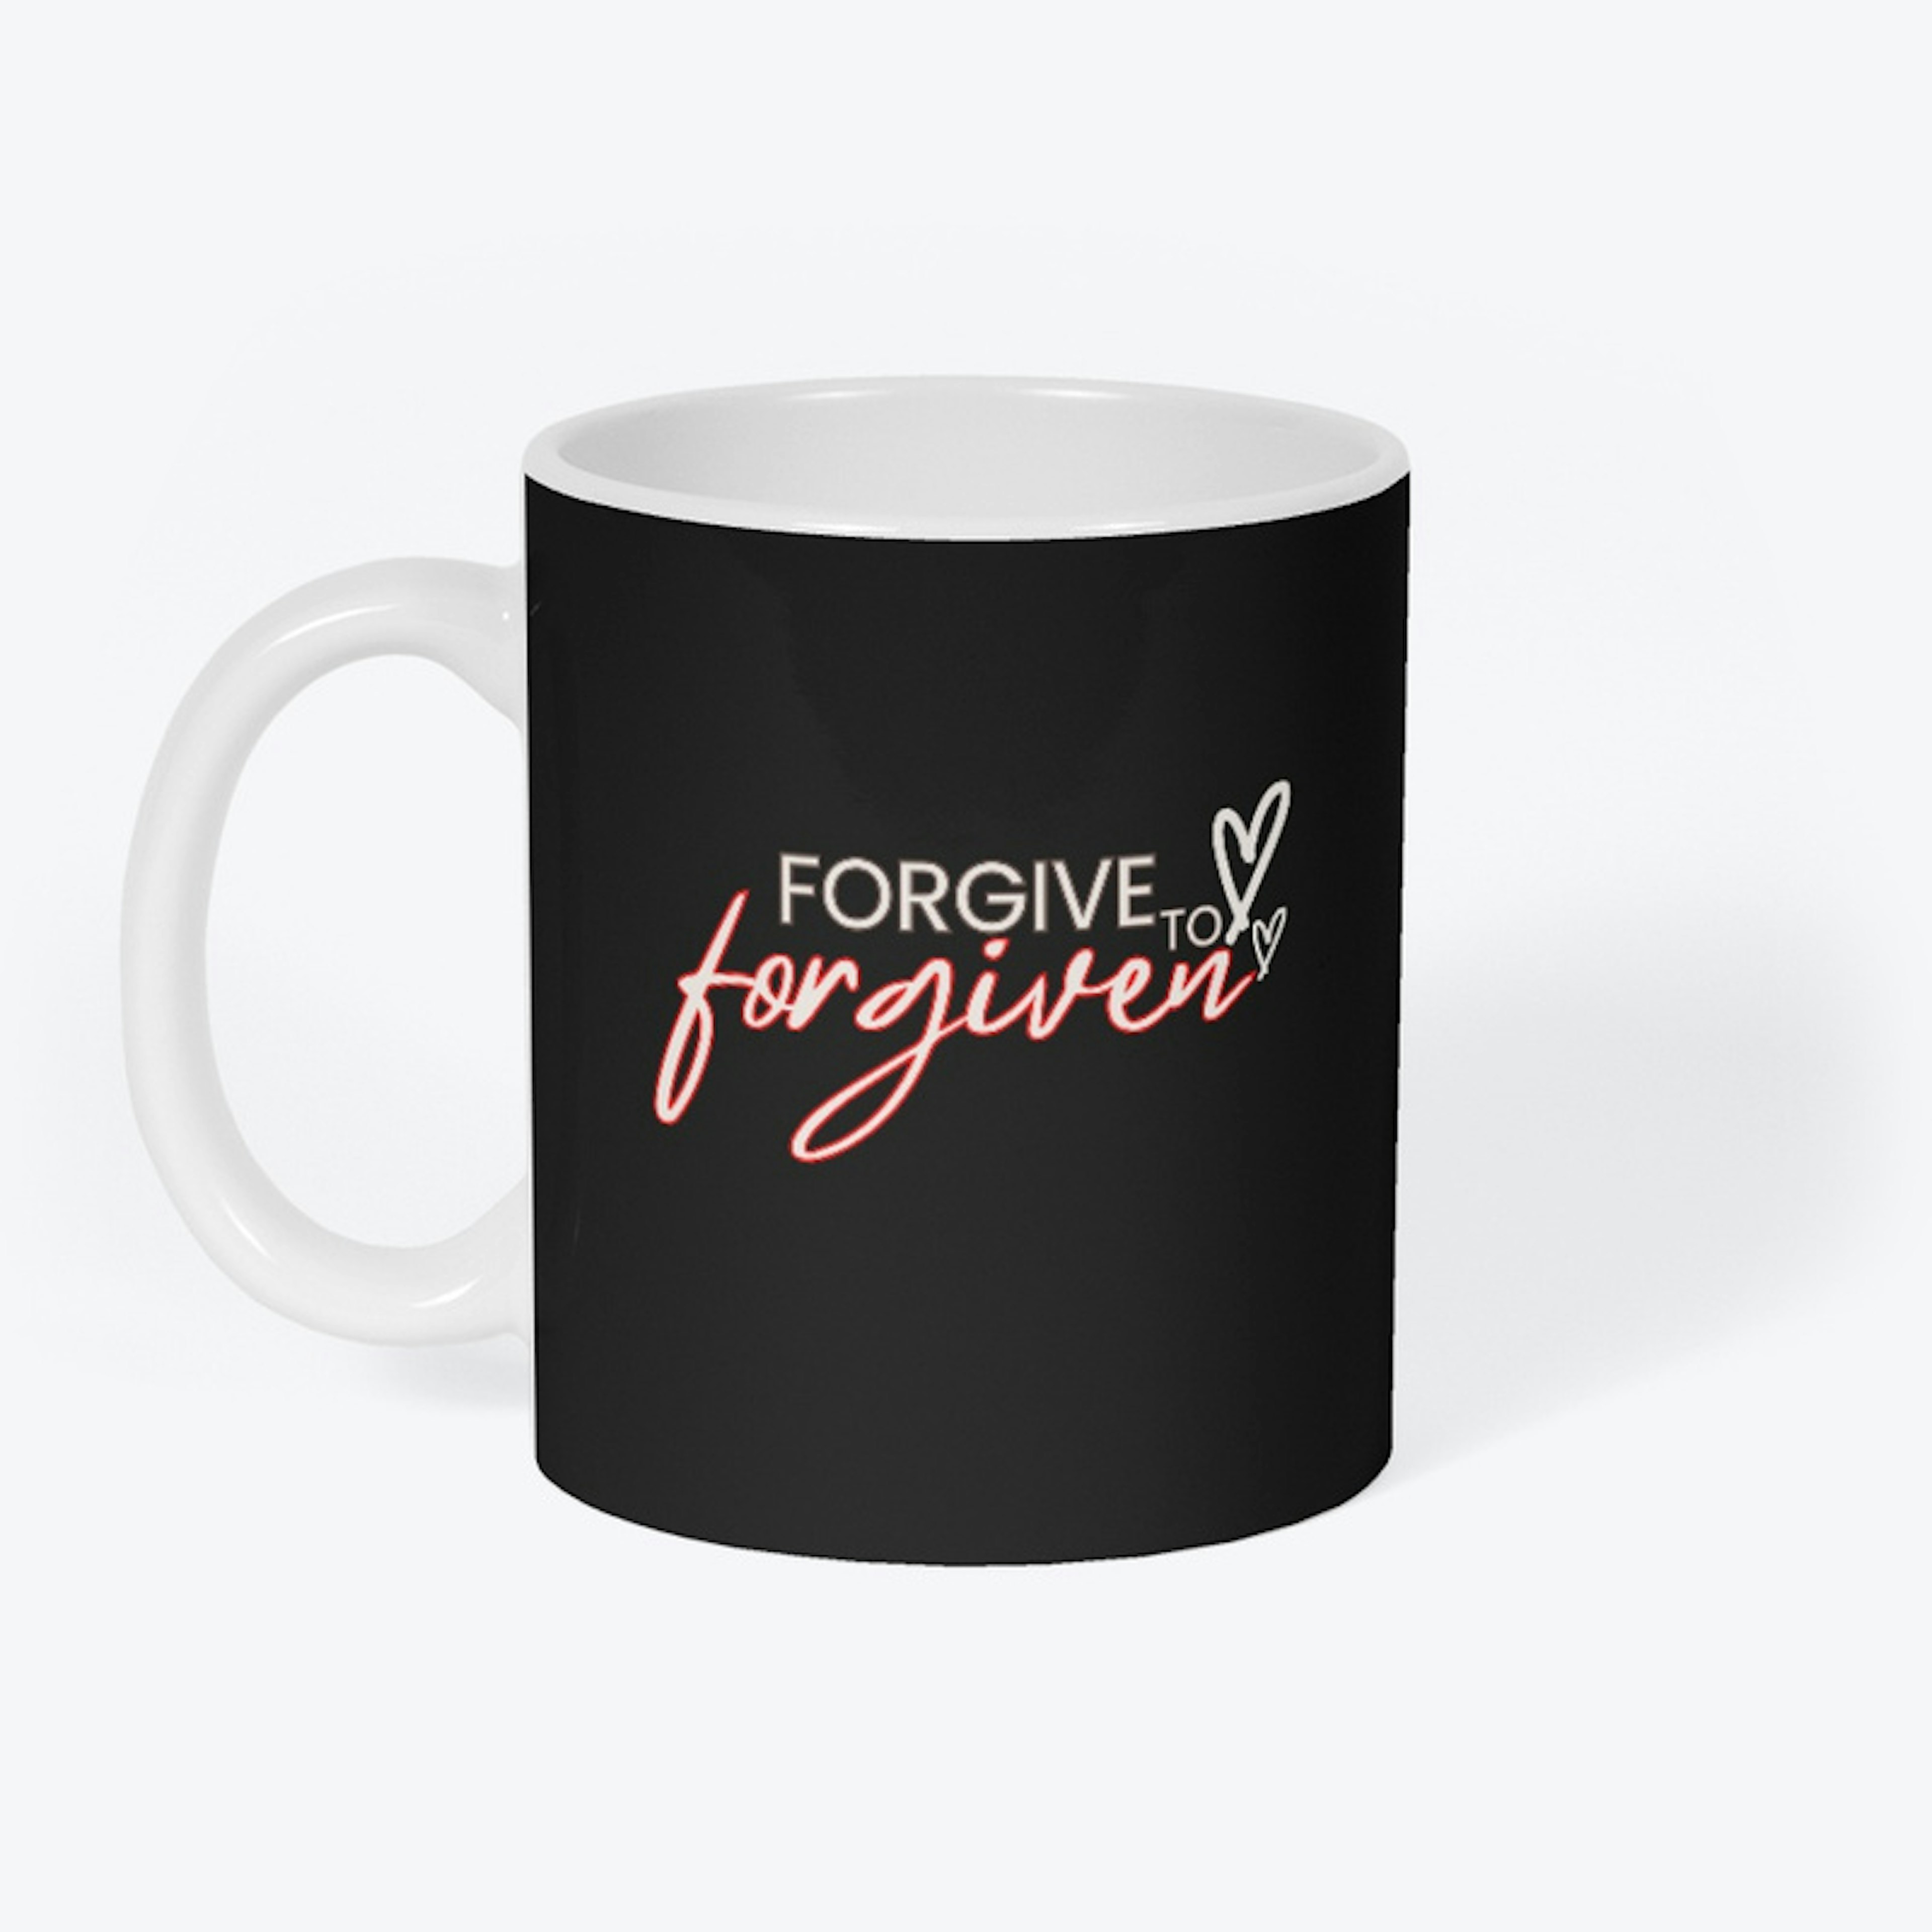 Forgive To Forgiven iii